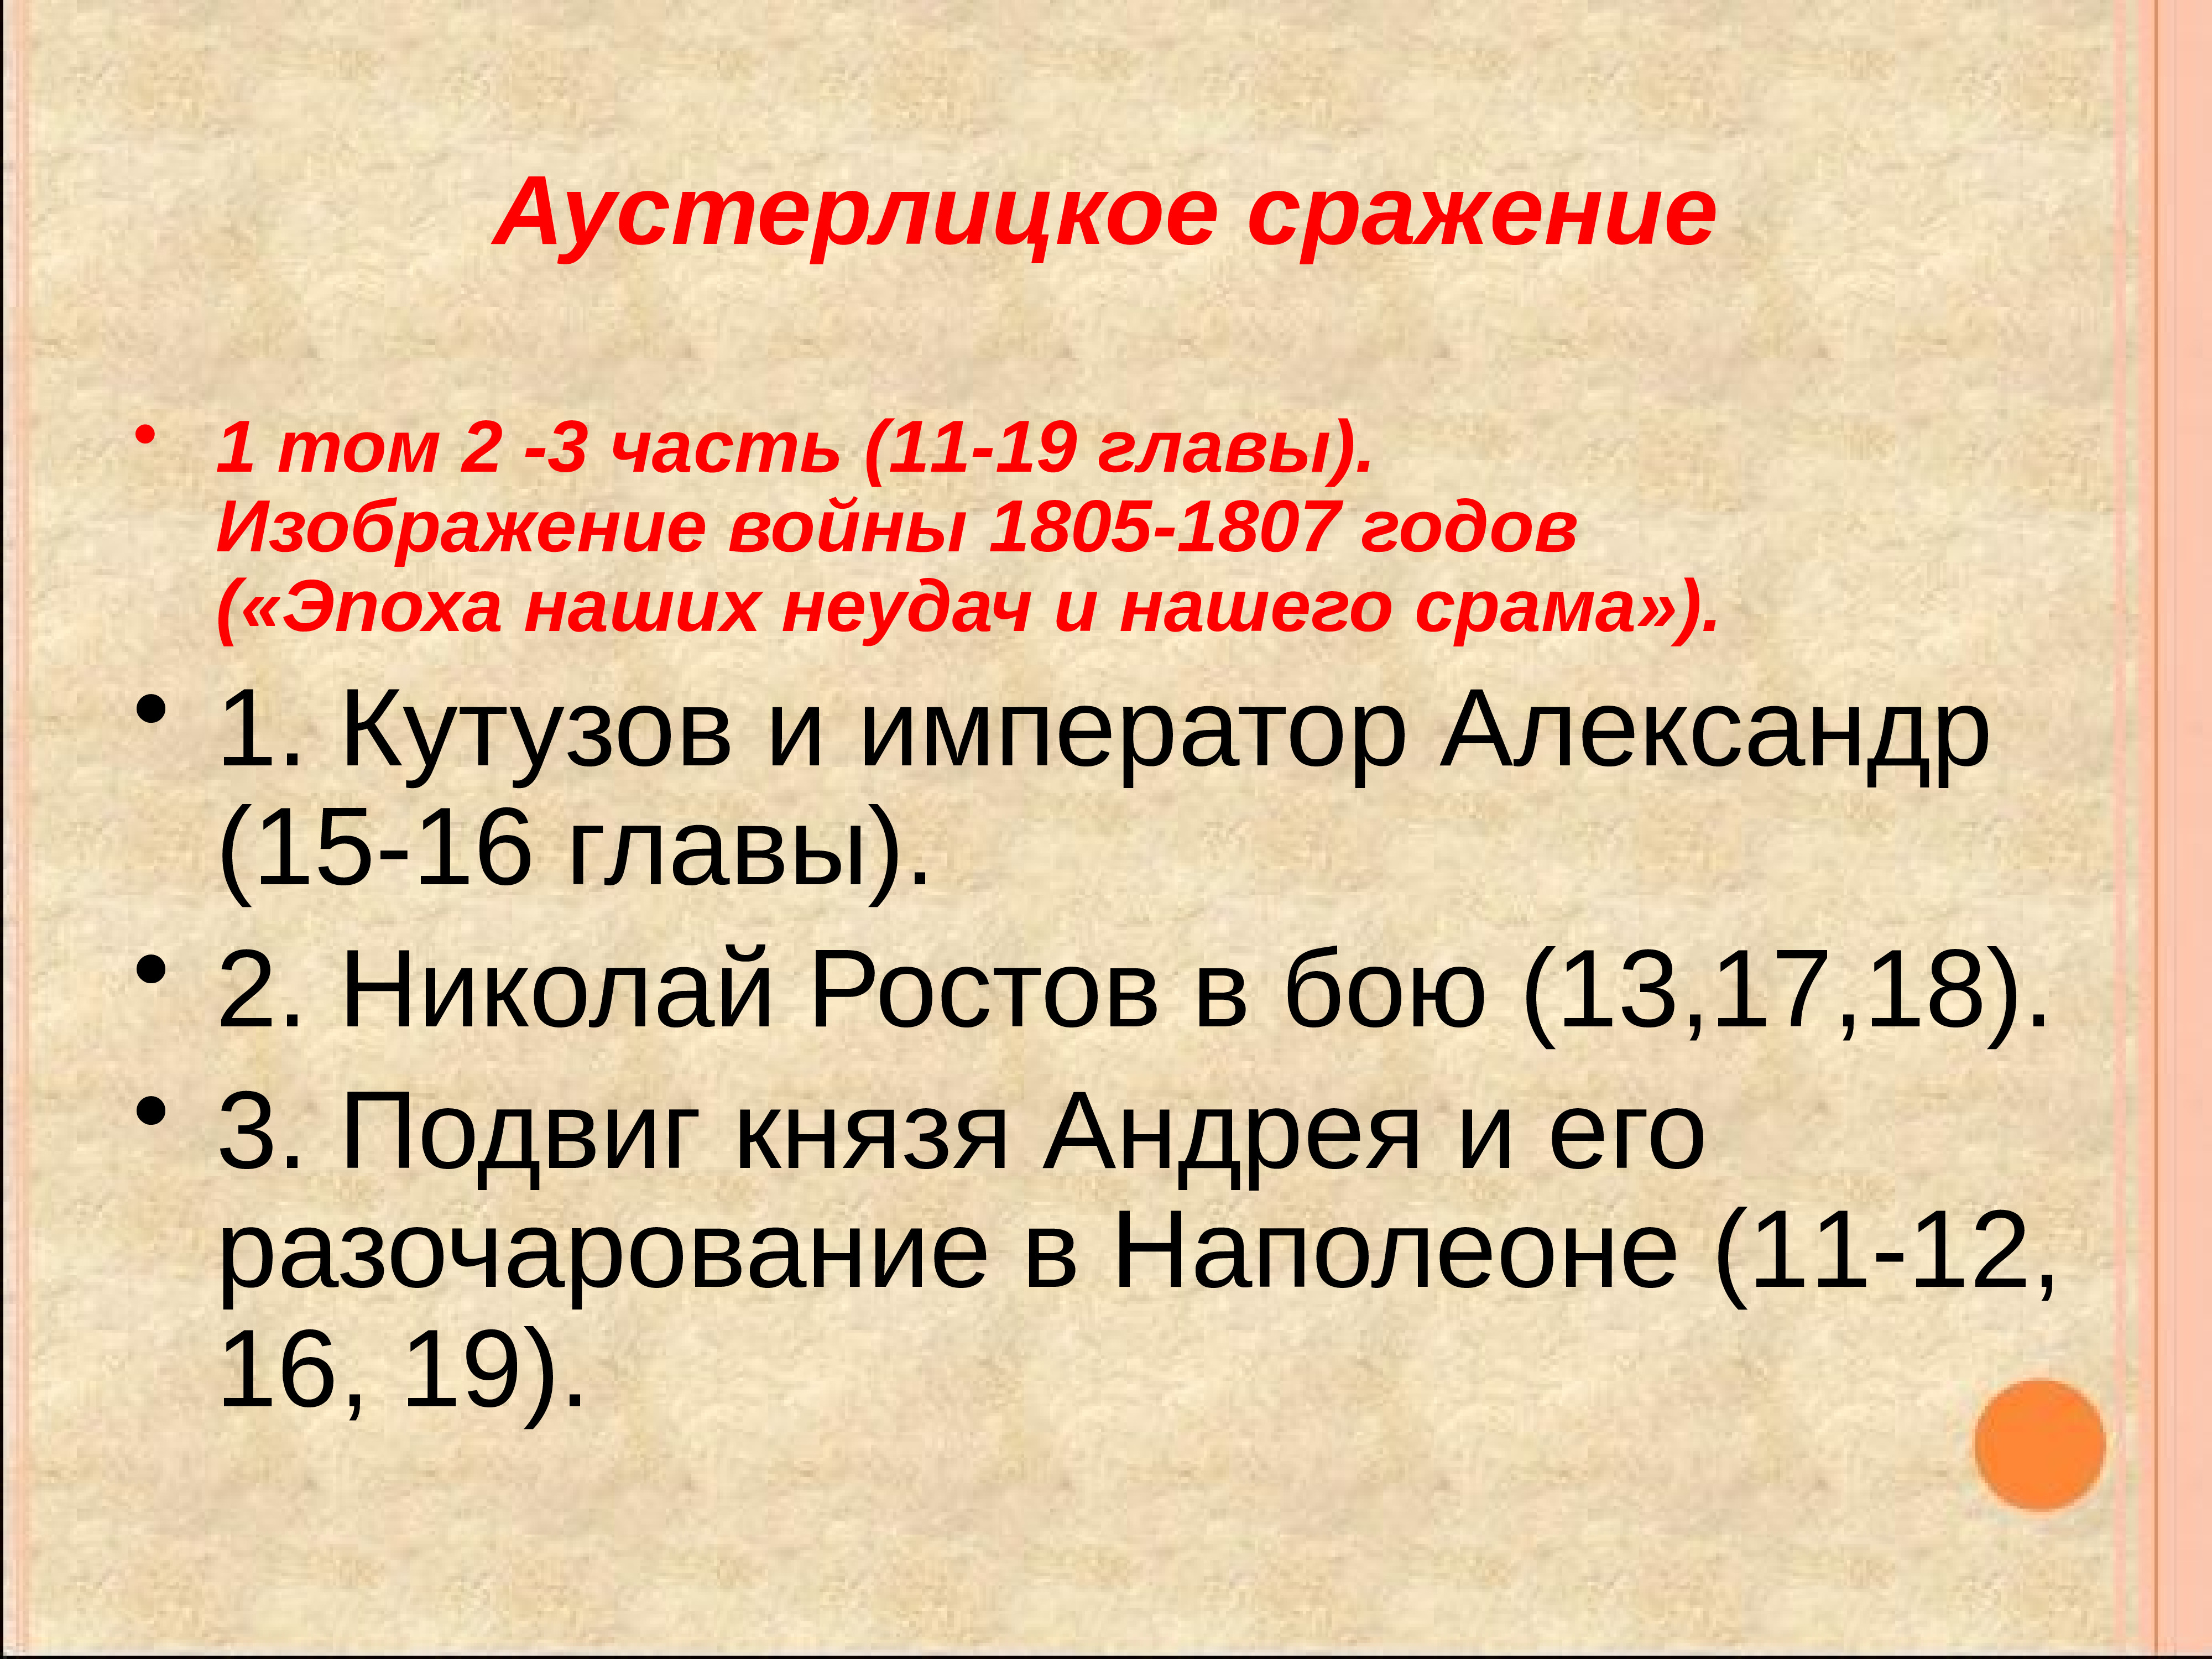 Кутузов 1 том. Изображение войны 1805-1807.